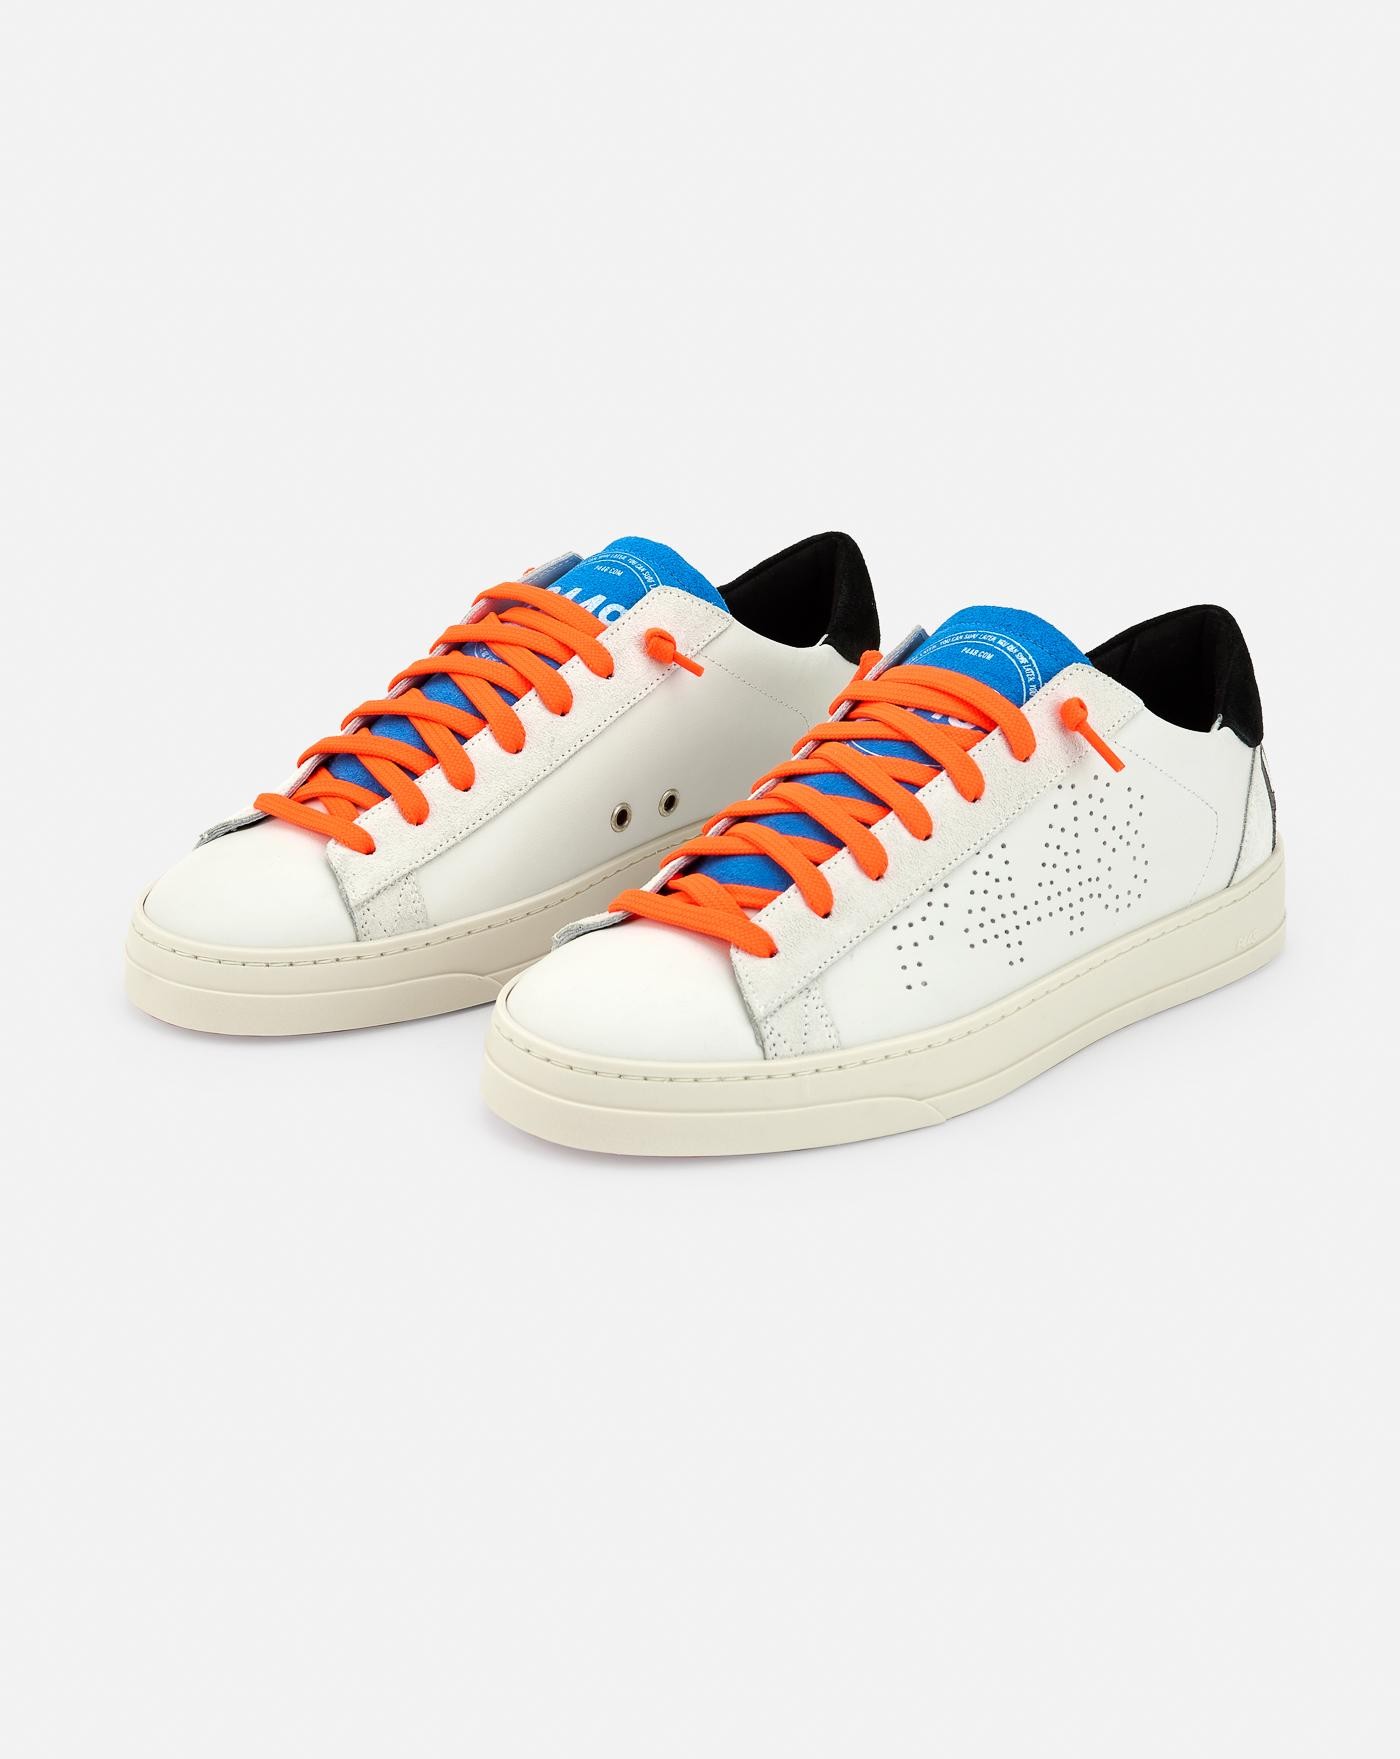 p448-zapatillas-jack-whi-neo-sneakers-white-orange-blancas-2